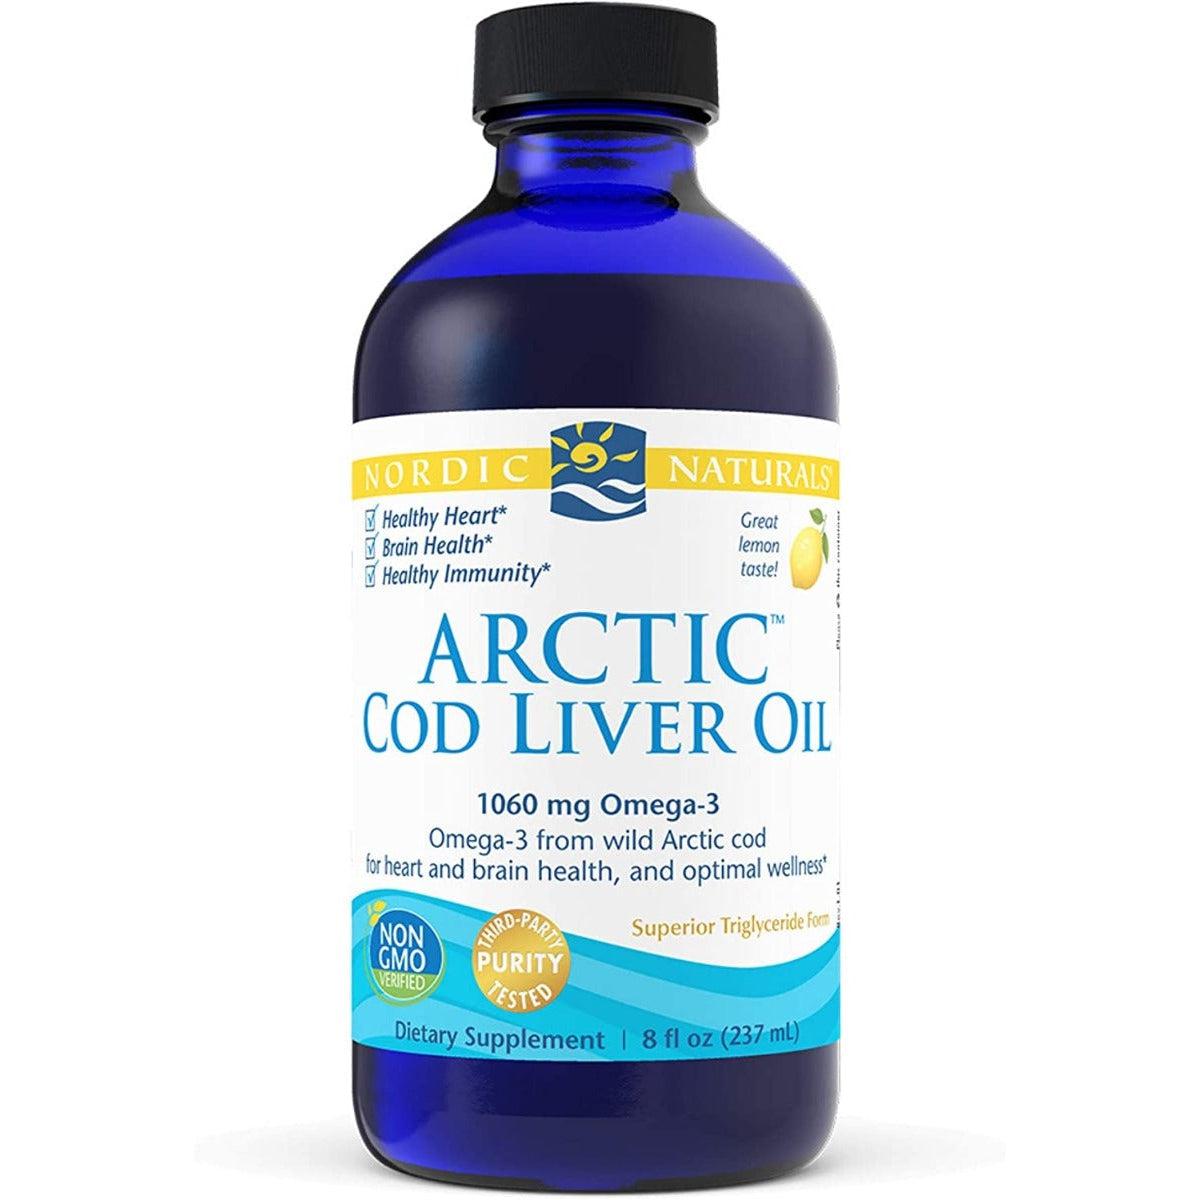 Nordic Naturals Arctic Cod Liver Oil 1060mg Omega-3 Non-GMO 237ml